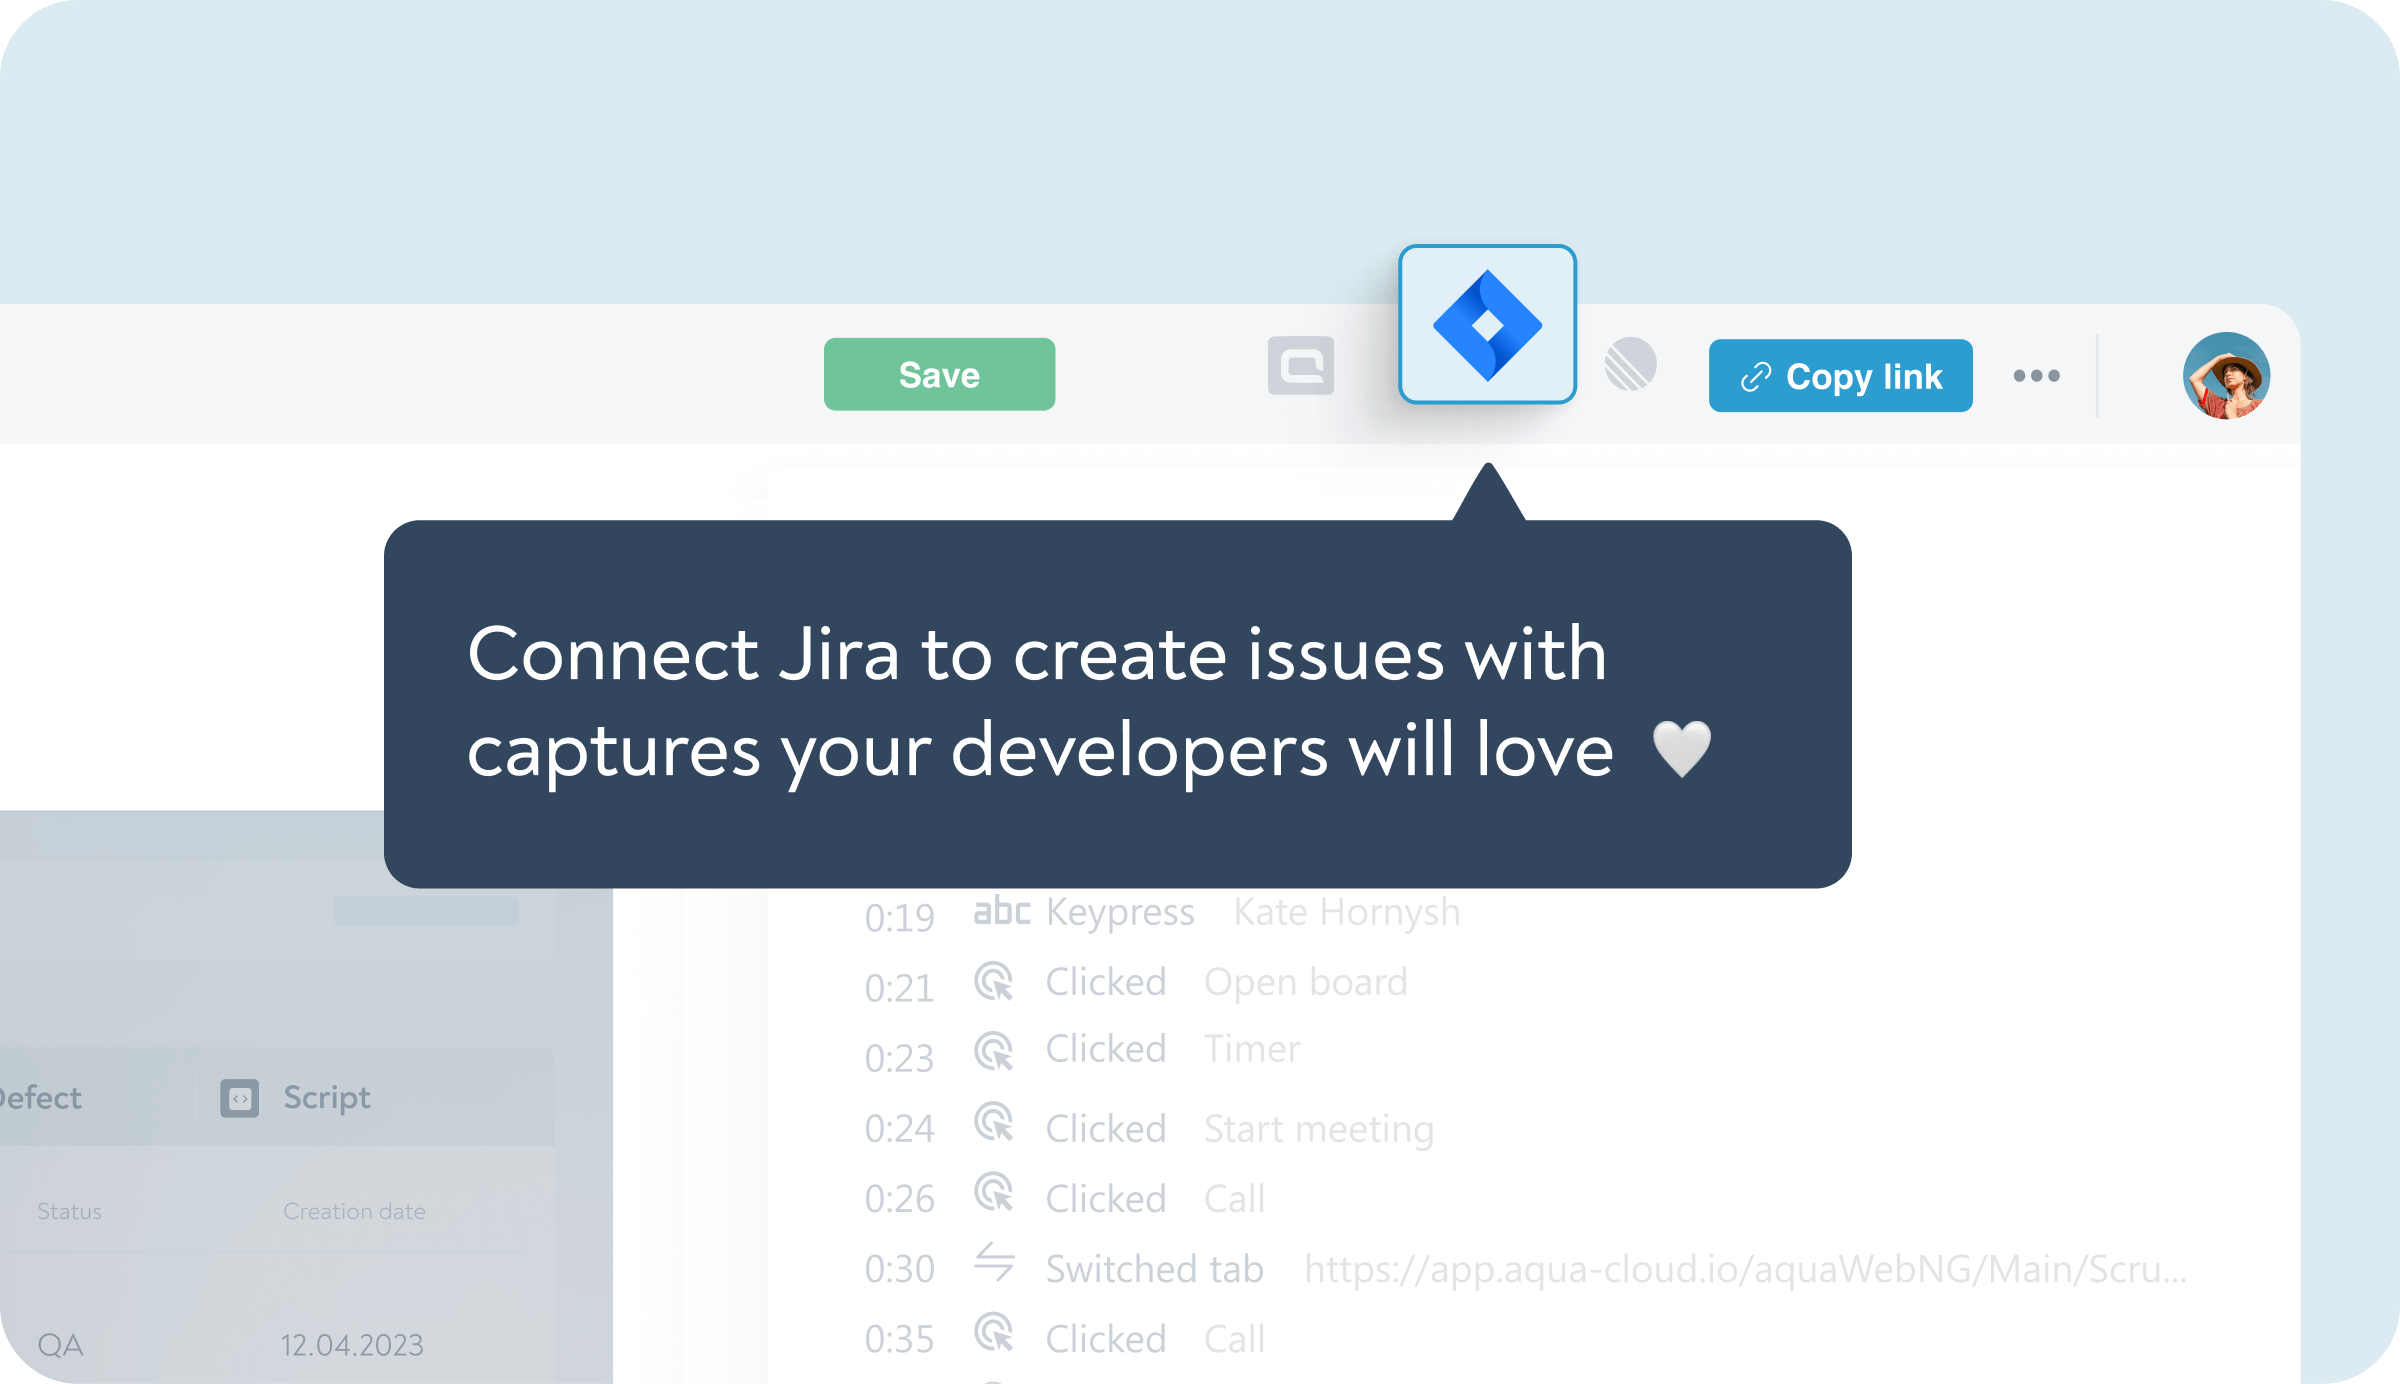 Send visualised issues to Jira and aqua